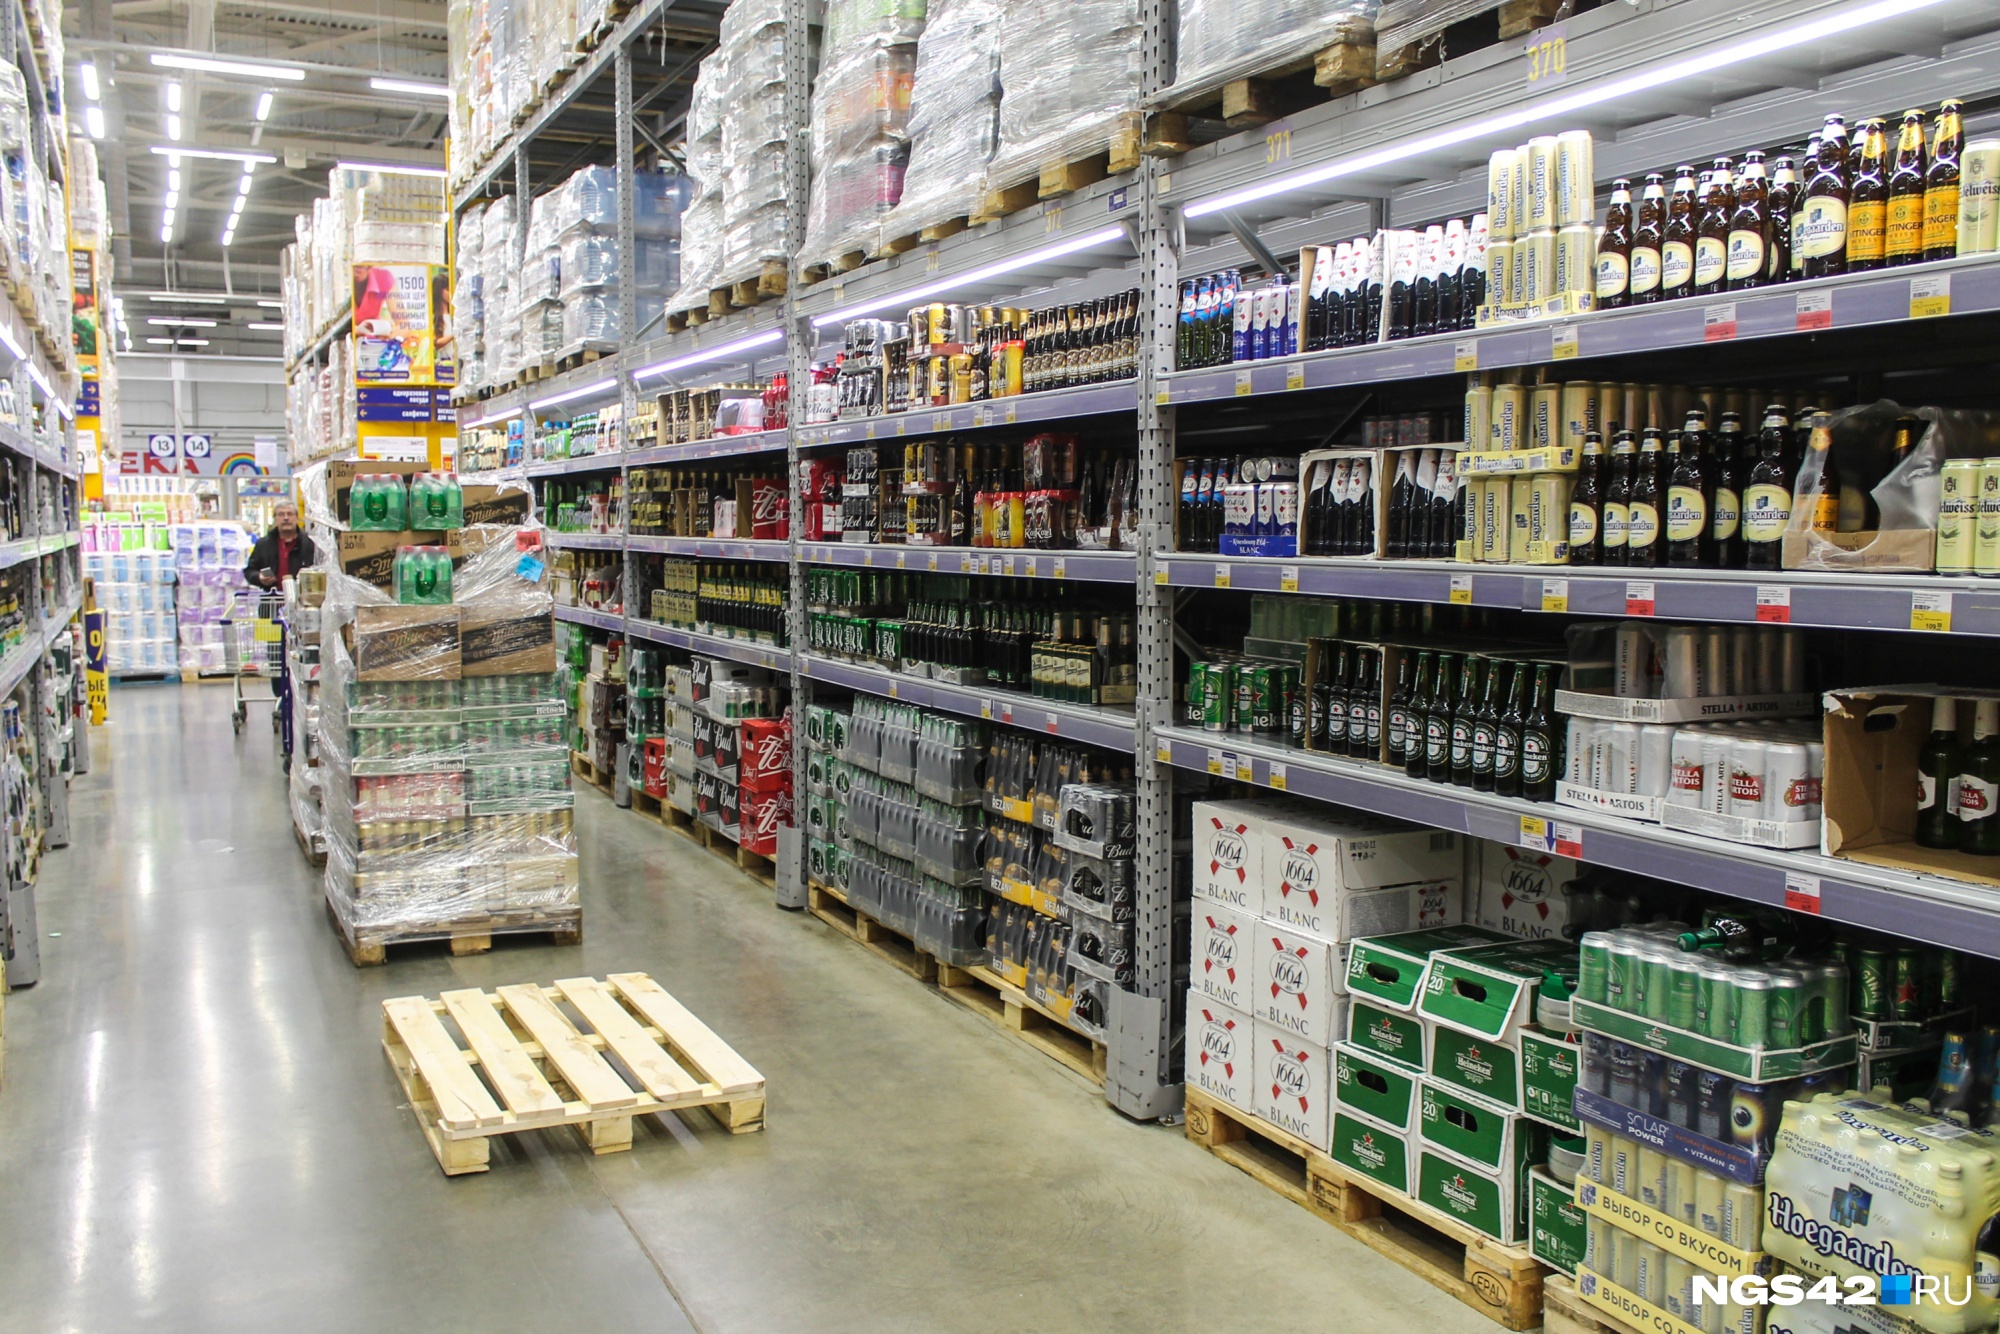 РСТ планирует запретить продавать алкоголь в Чите на 2 дня, а не 11